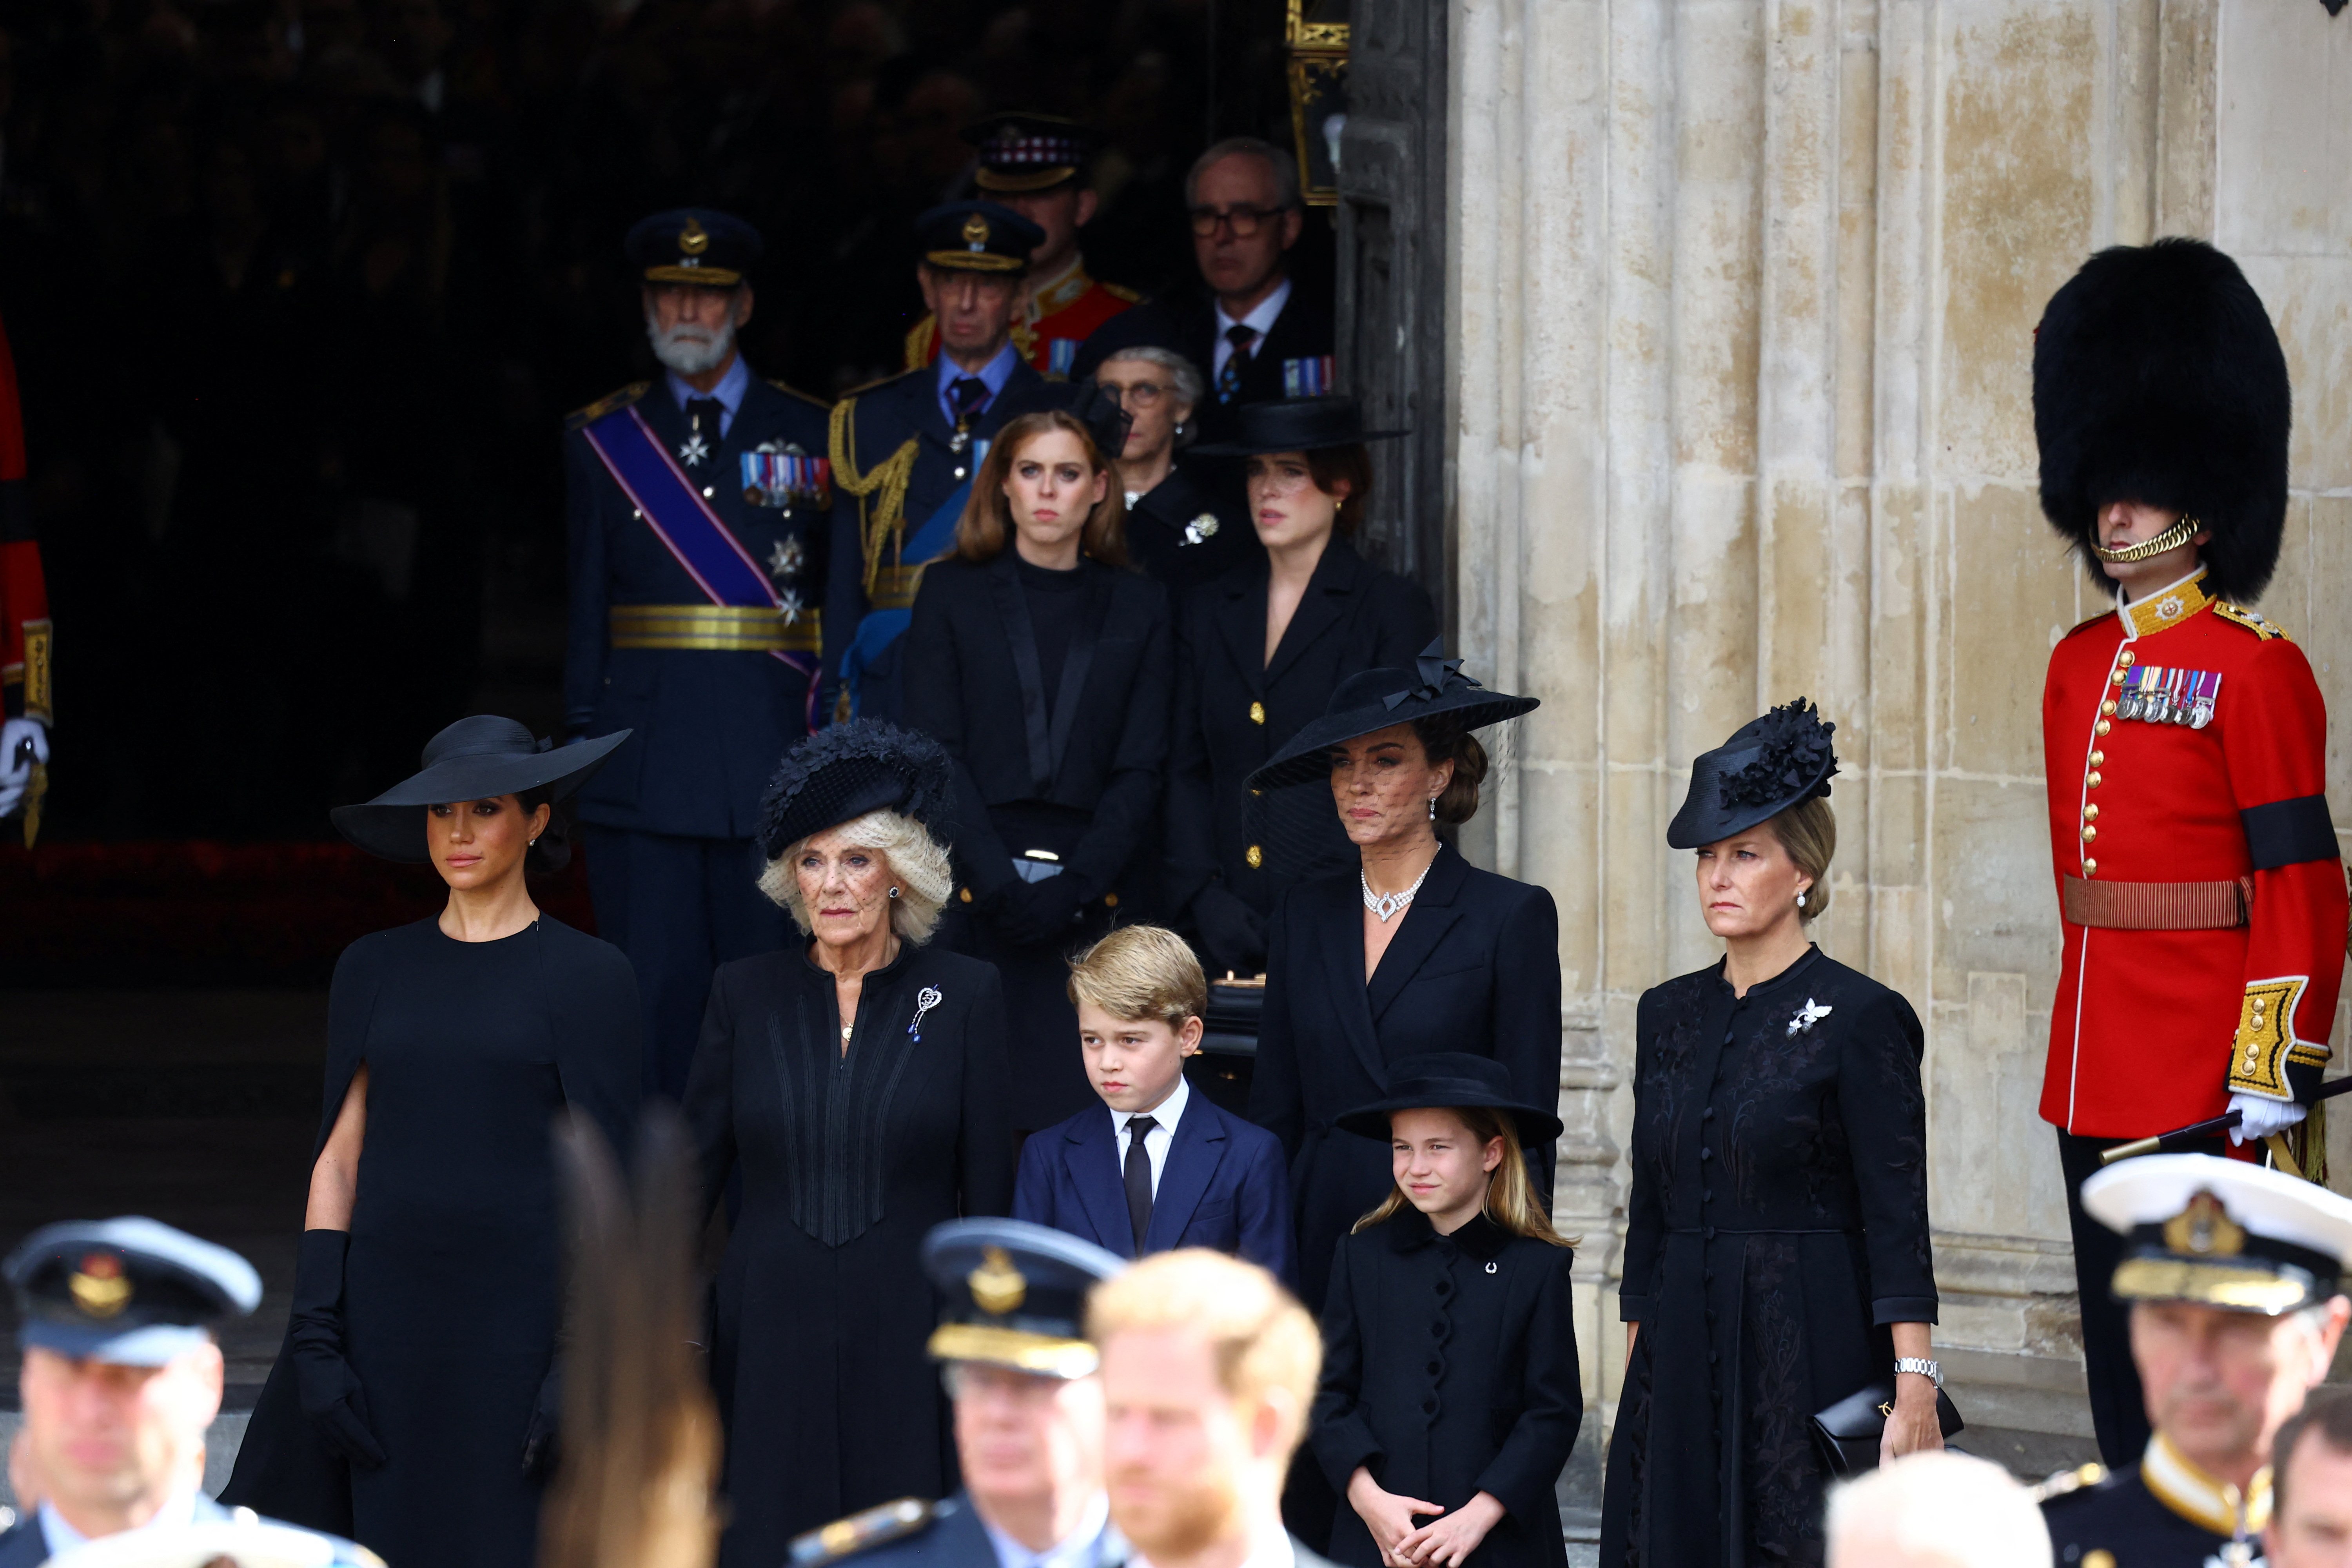 Meghan, duquesa de Sussex, reina Camilla, príncipe George, princesa Charlotte, Catherine, princesa de Gales, Sophia, condesa de Wessex, princesa Beatrice, princesa Eugenie, príncipe Michael y príncipe Edward, duque de Kent, se paran en una entrada después del Funeral de Estado de la Reina Elizabeth II el 19 de septiembre de 2022 en Londres, Inglaterra. | Foto: Getty Images